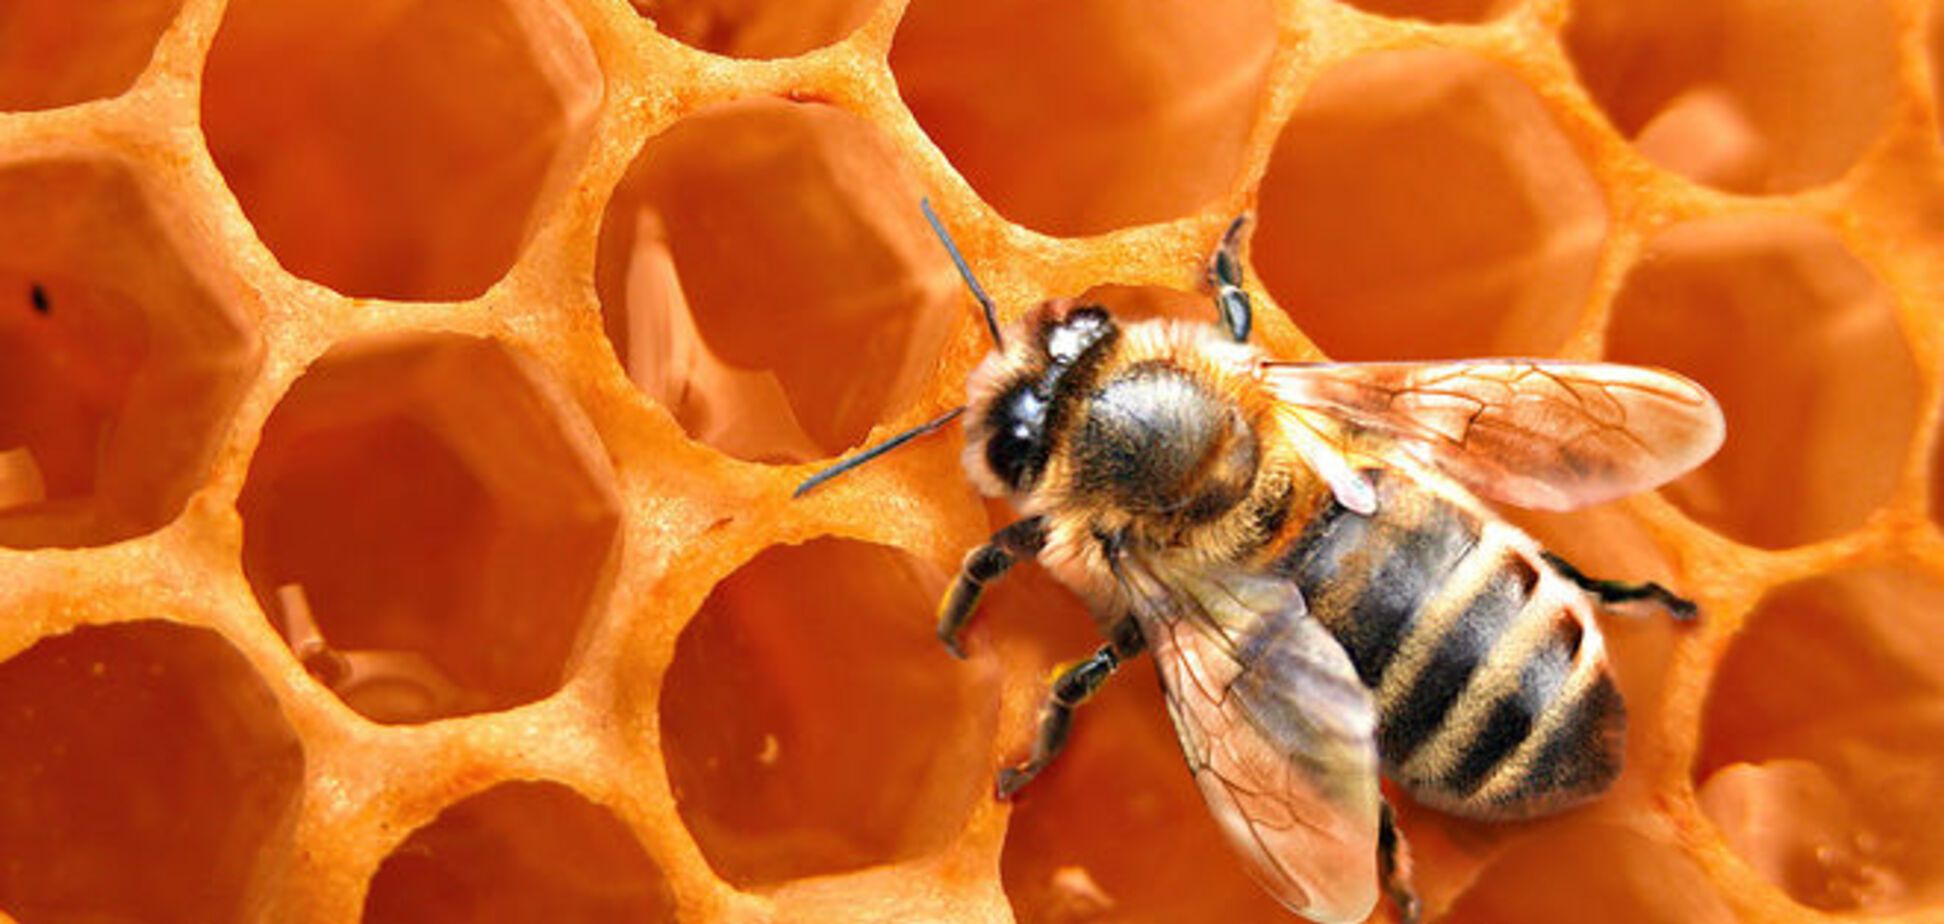 Сладкая жизнь под угрозой: в США массово гибнут пчелы